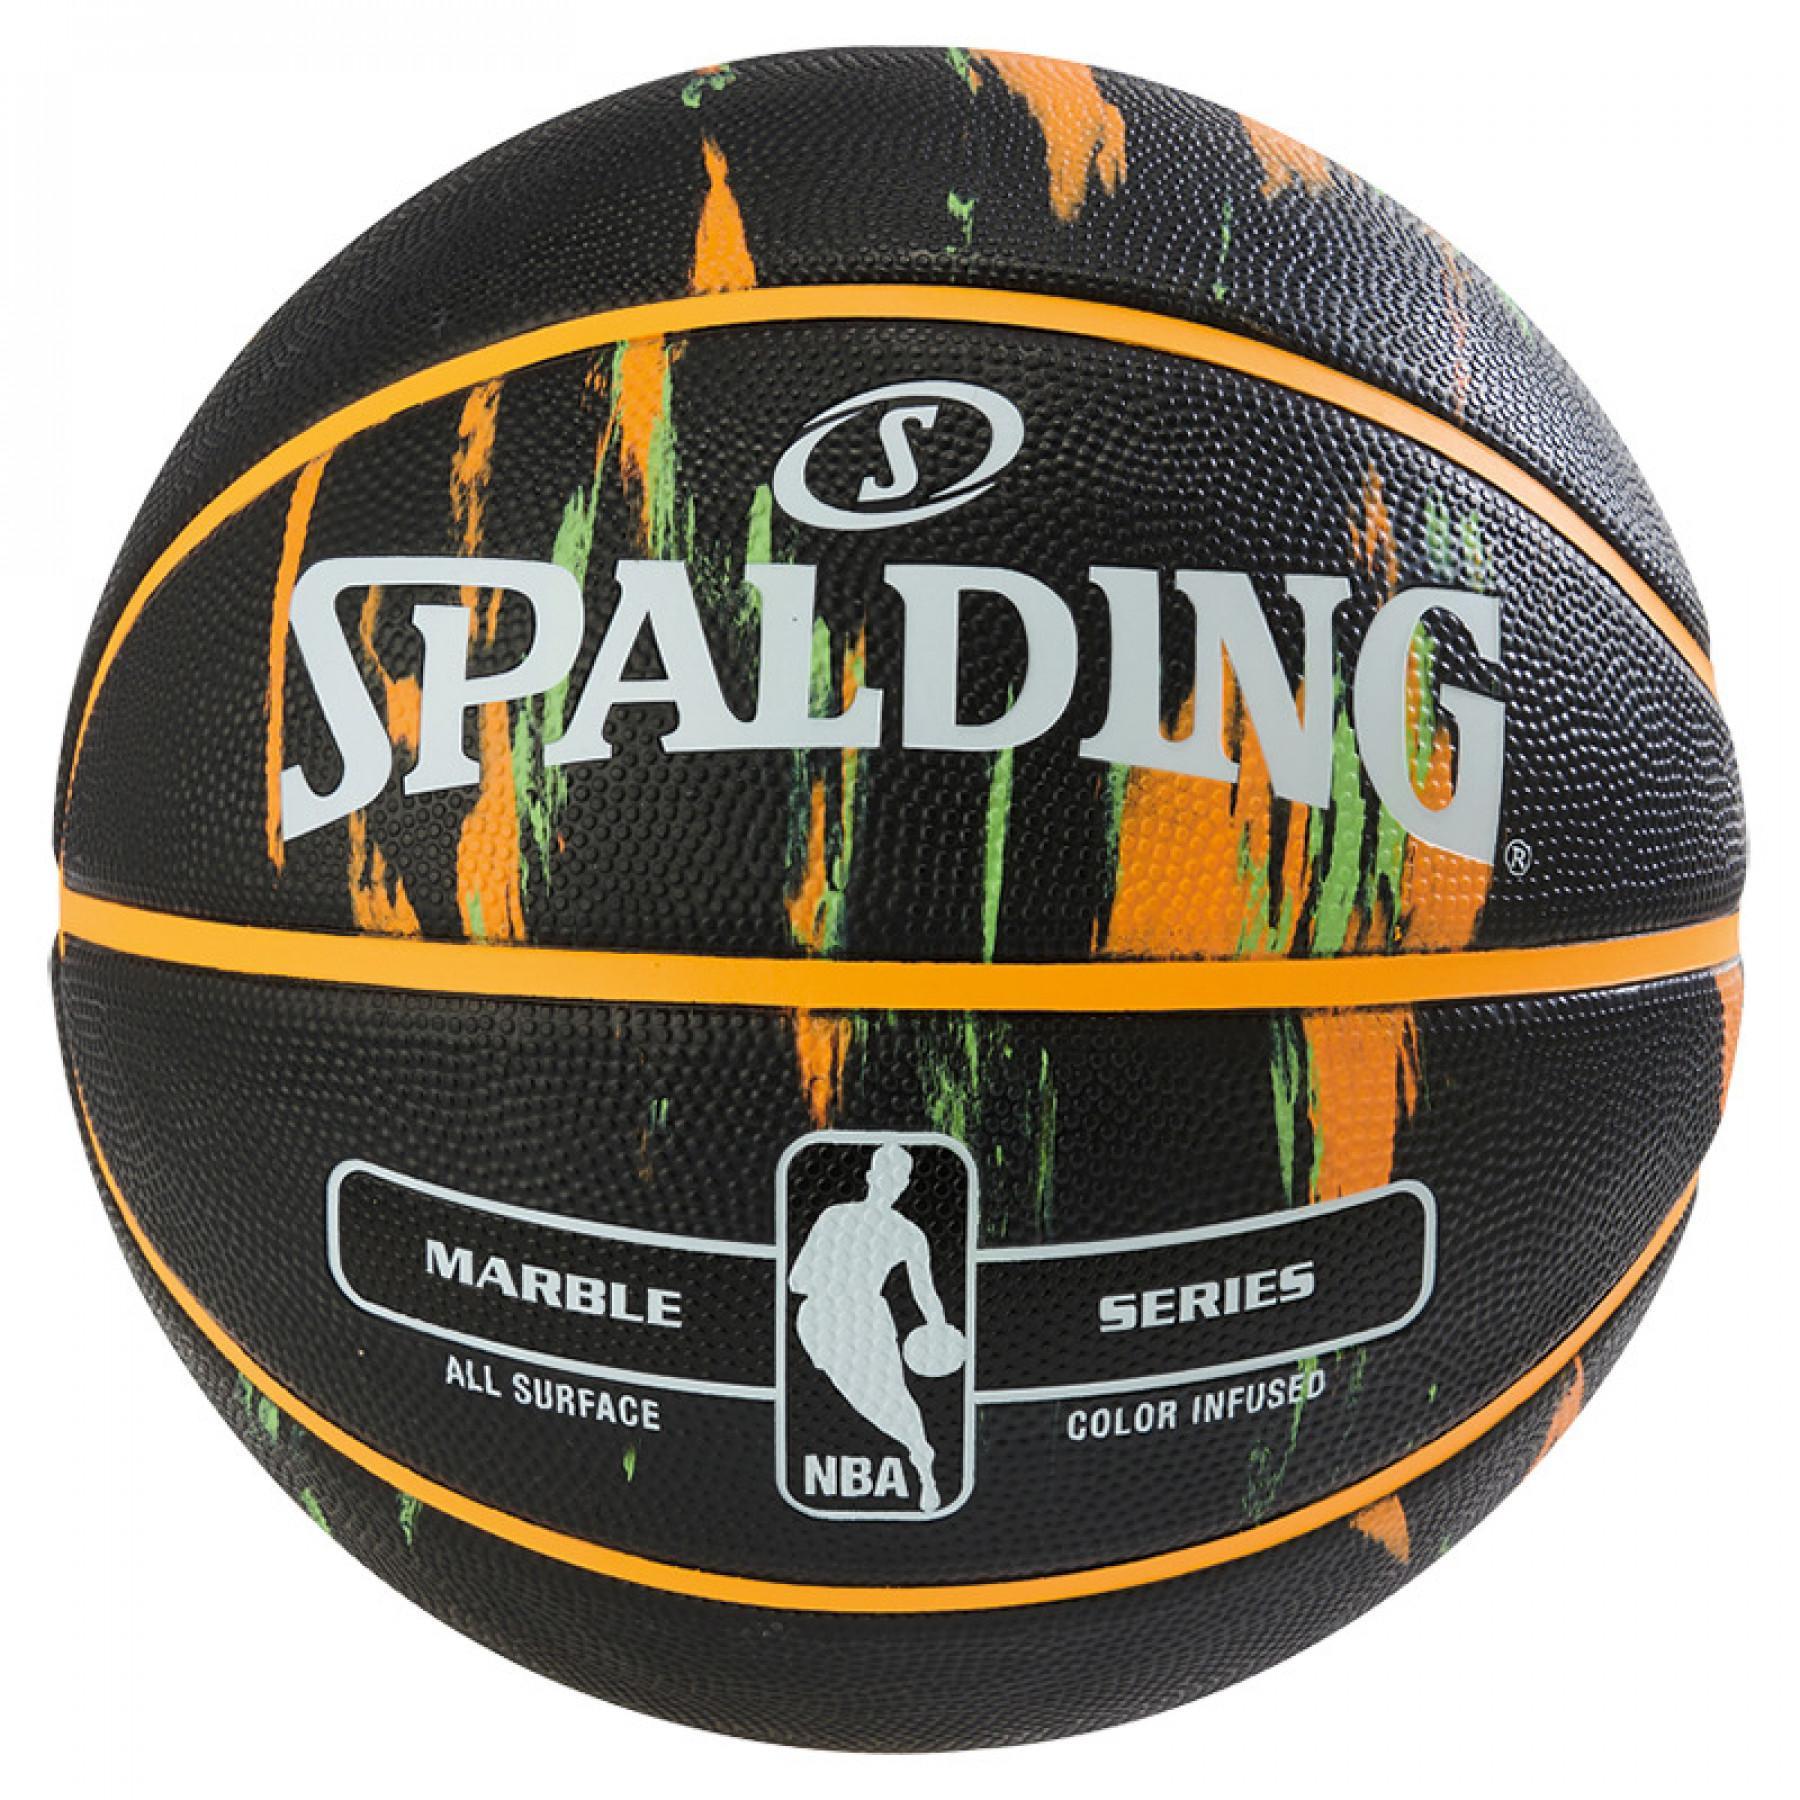 Ballong Spalding NBA Marble (83-882z)